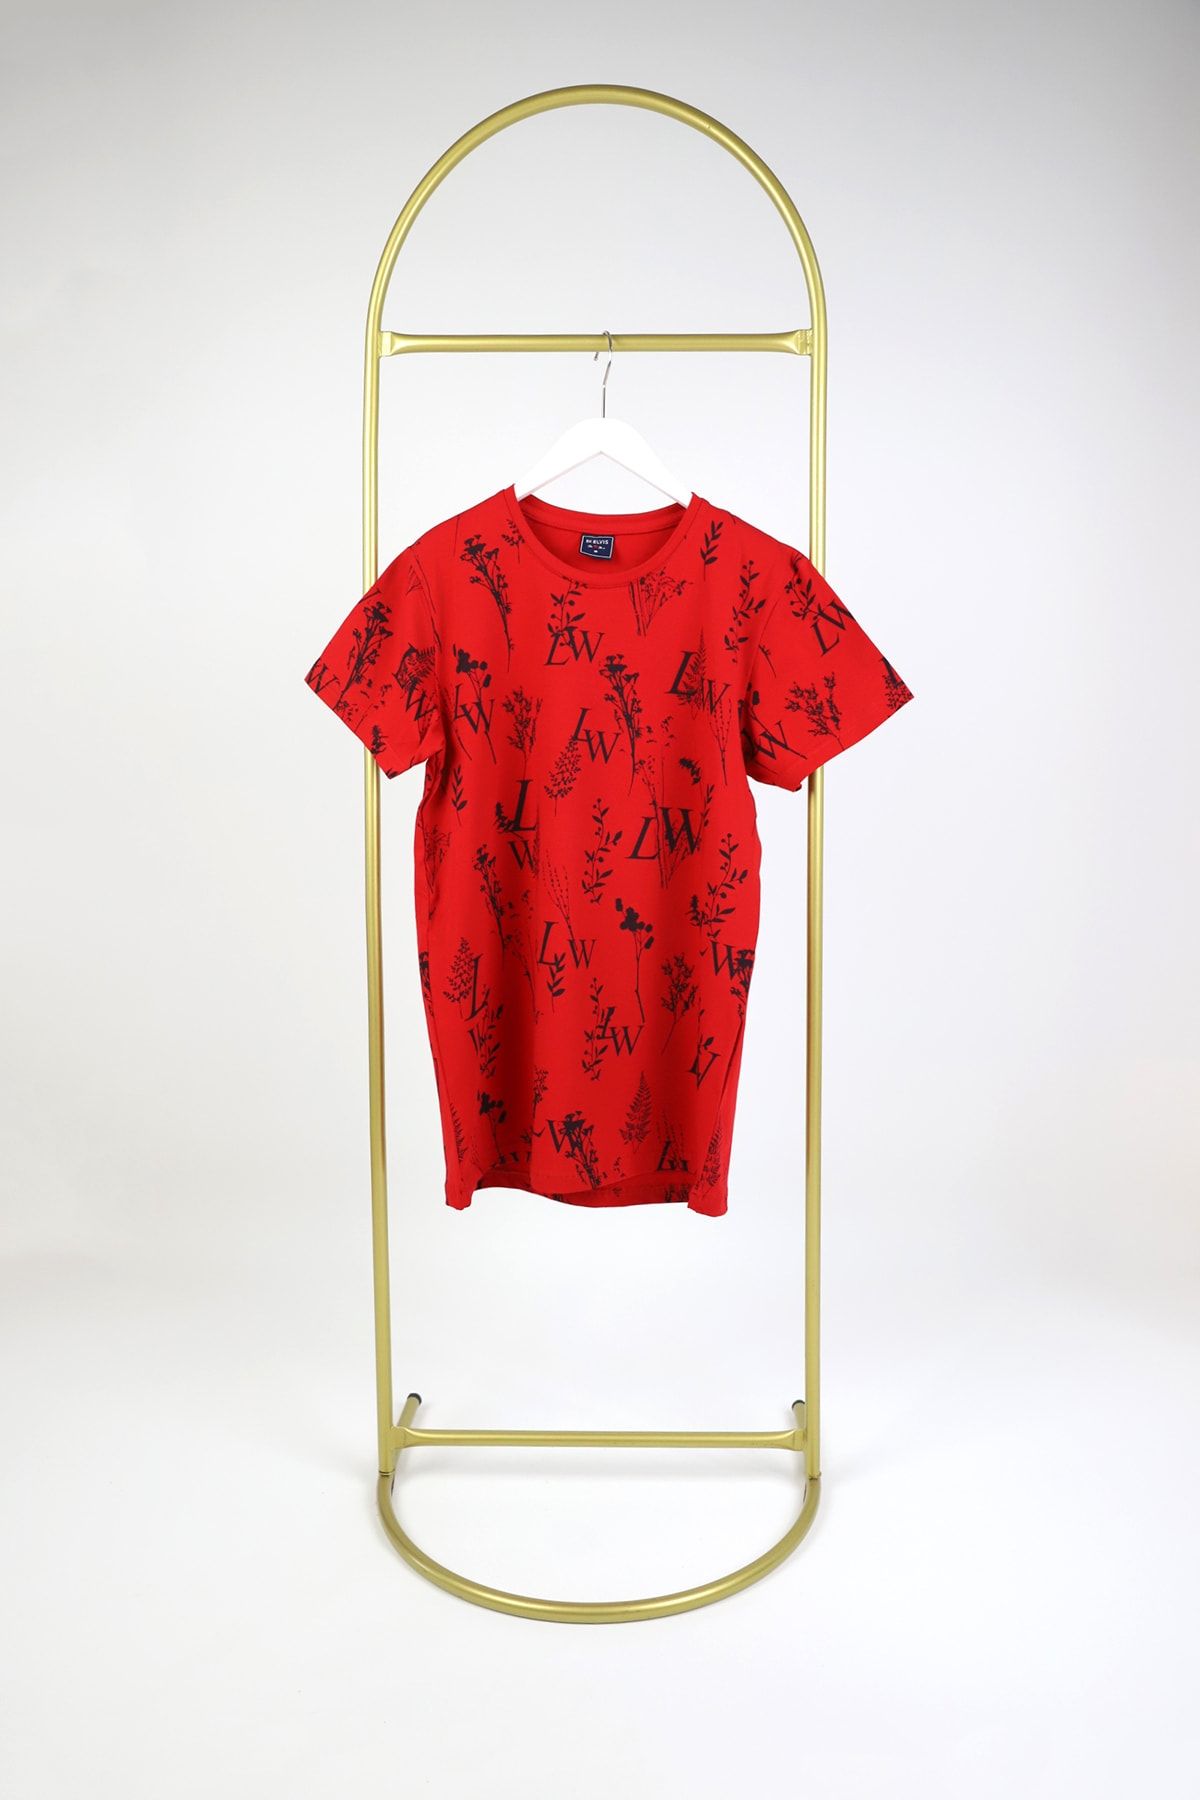 ZUEZ COLLECTİONE Erkek Kırmızı Slim Fit T-shirt